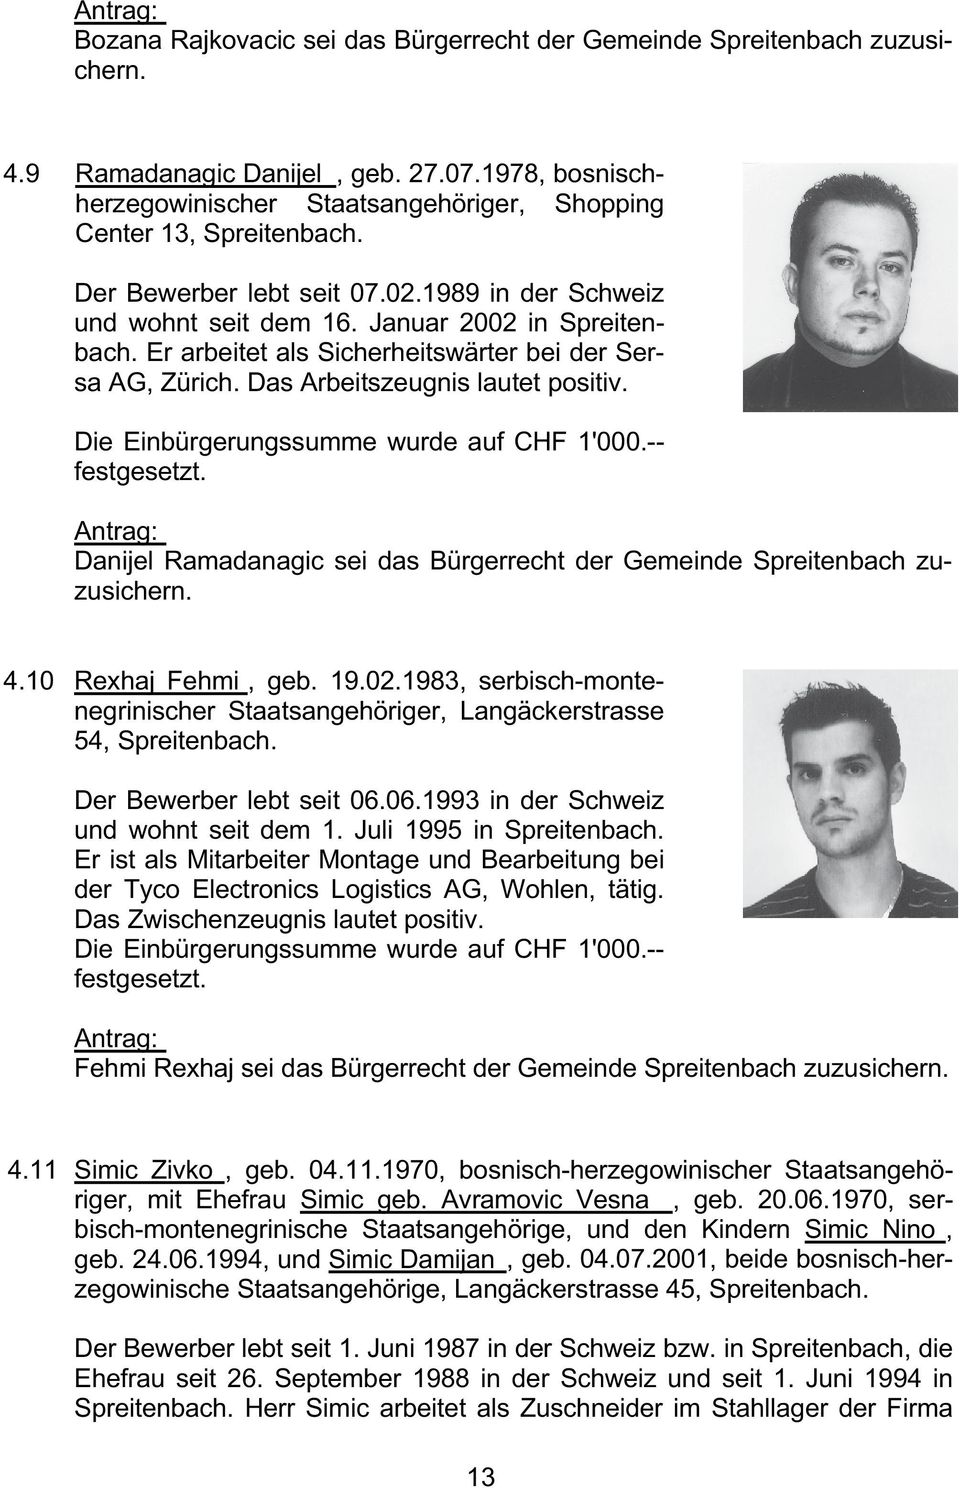 Die Einbürgerungssumme wurde auf CHF 1'000.-- festgesetzt. Danijel Ramadanagic sei das Bürgerrecht der Gemeinde Spreitenbach zuzusichern. 4.10 Rexhaj Fehmi, geb. 19.02.